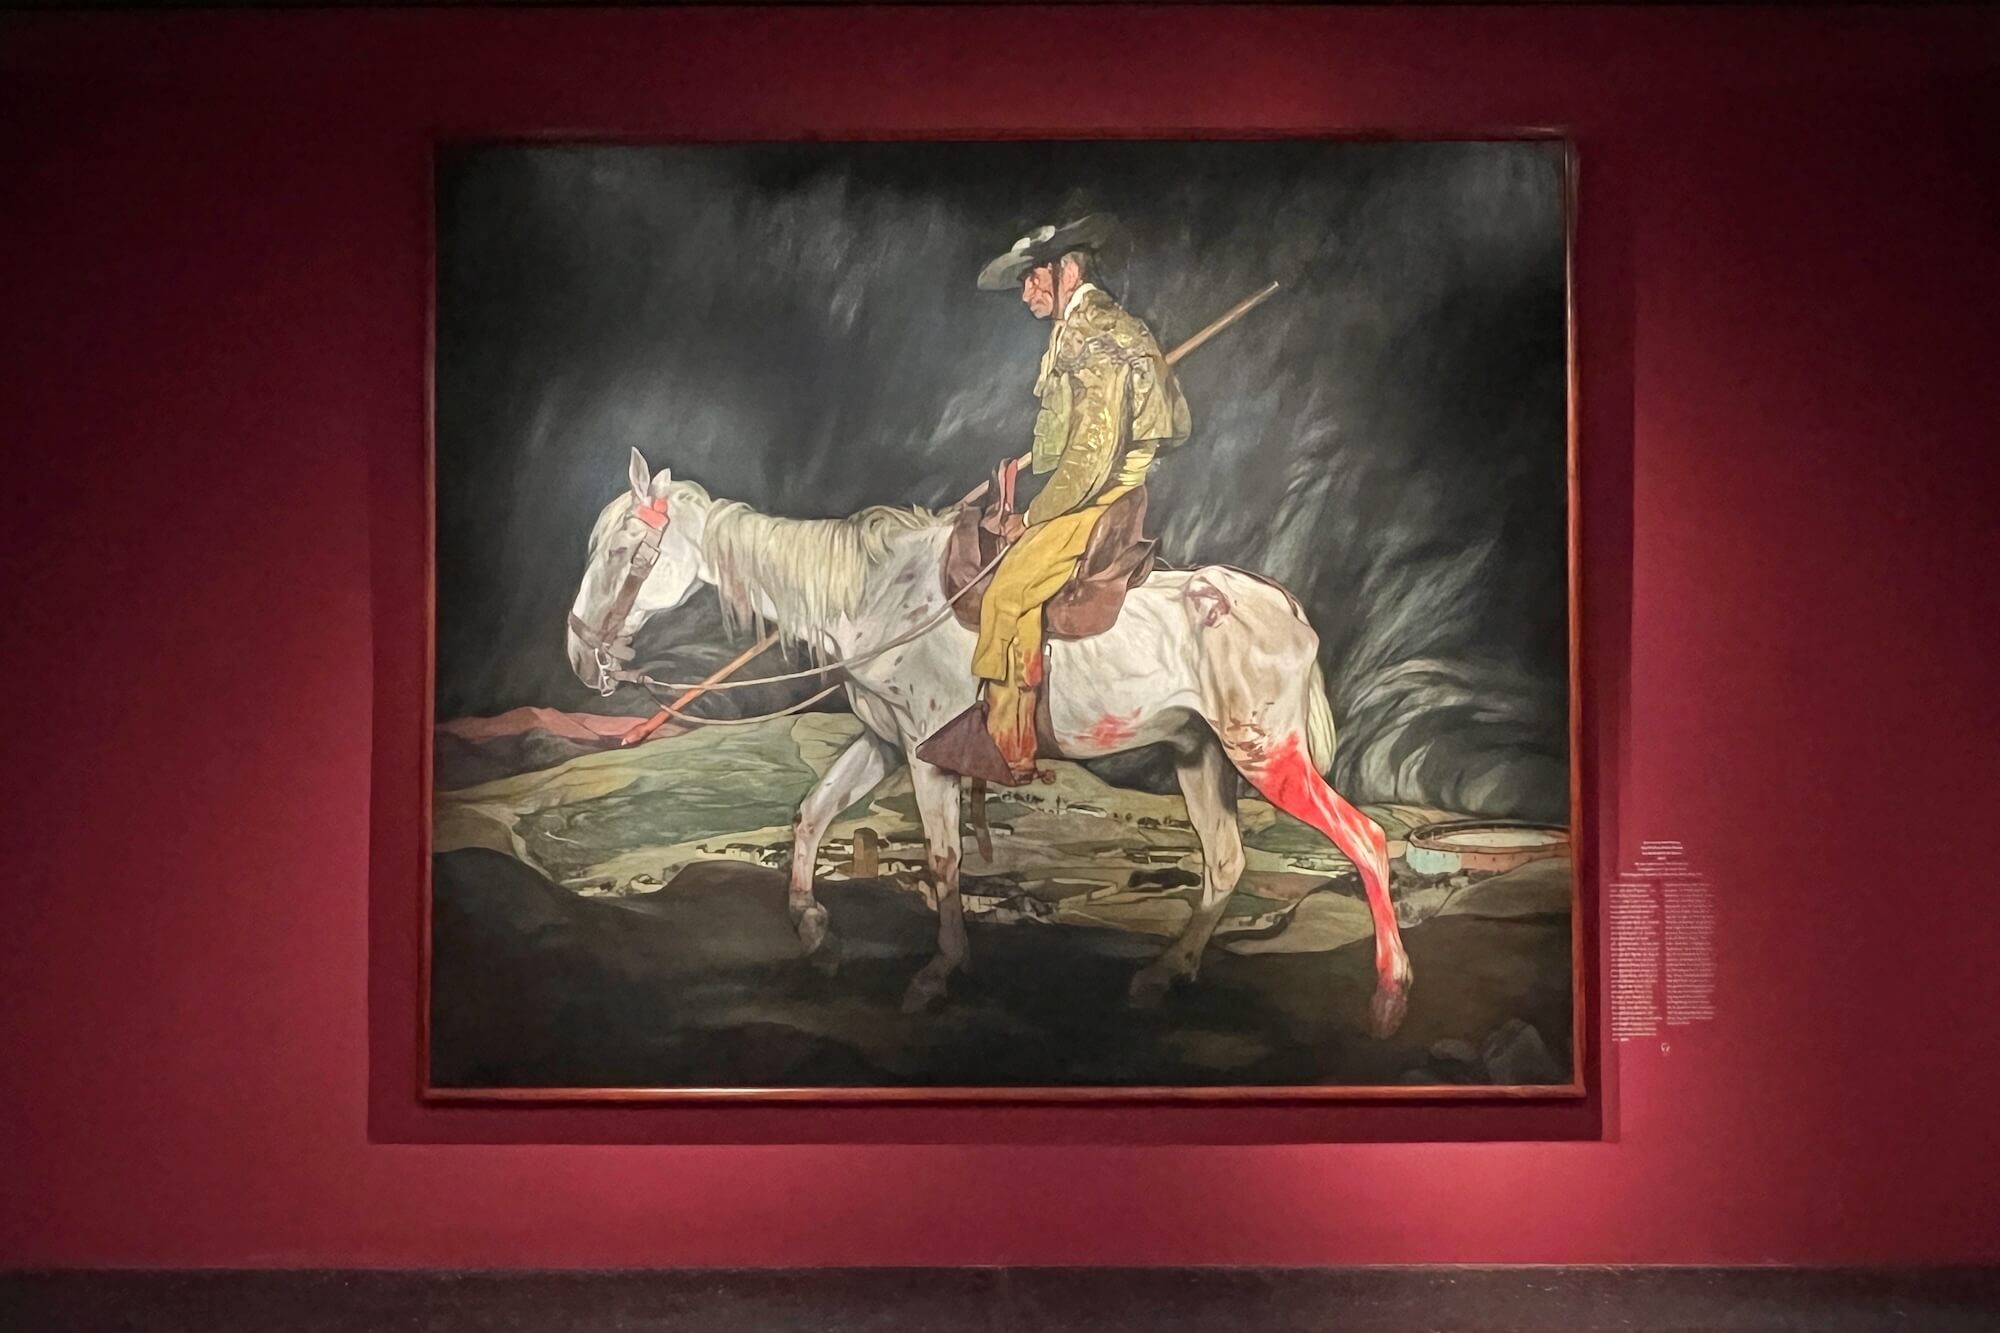 Die Gemälde von Ignacio Zuloaga prägten den Mythos Spaniens. Eine Ausstellung zeigt das Werk des in Deutschland eher unbekannten Künstlers.